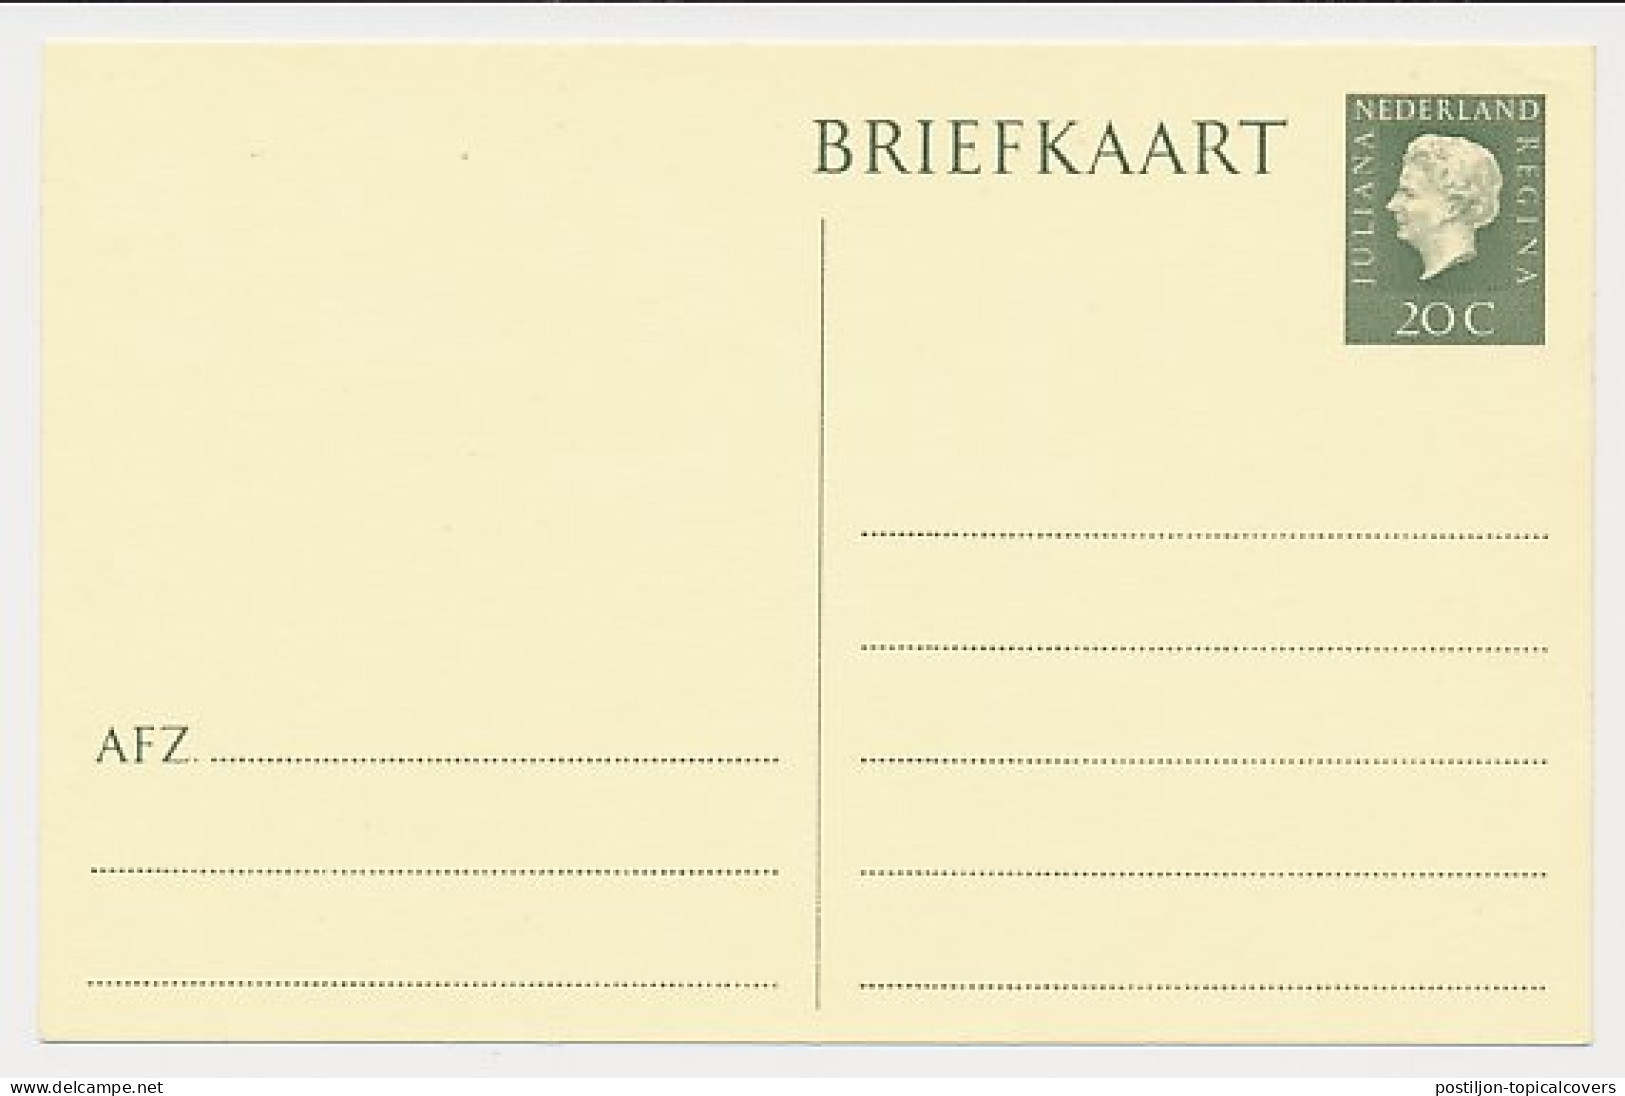 Briefkaart G. 342 - Ganzsachen